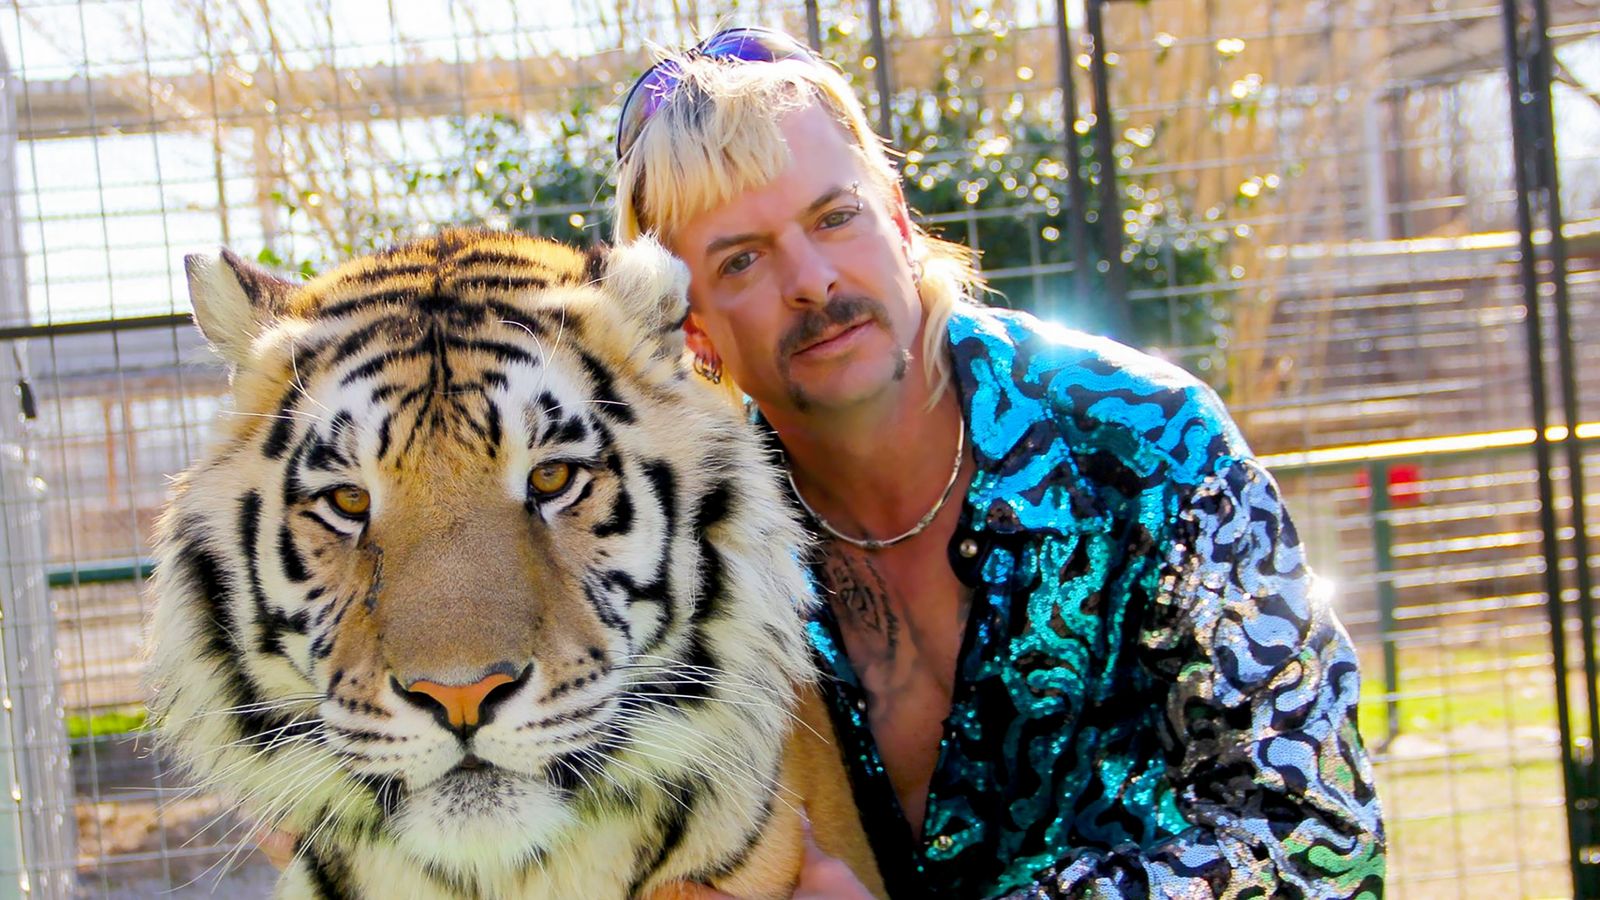 La condanna di Joe Exotic di Tiger King è stata abbreviata per omicidio a pagamento |  Notizie dagli Stati Uniti